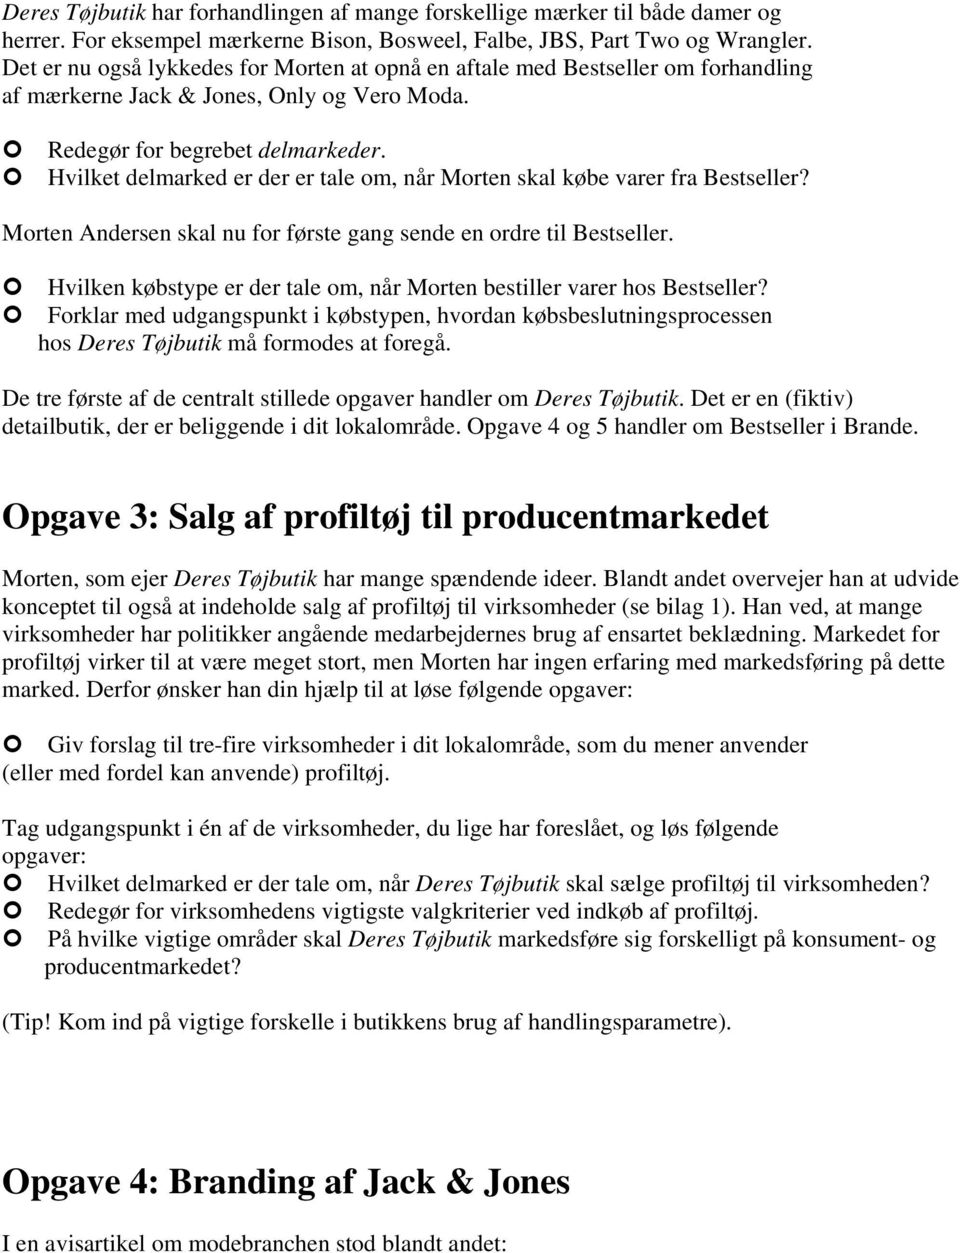 Opgave Indkøb ny kollektion - PDF Download